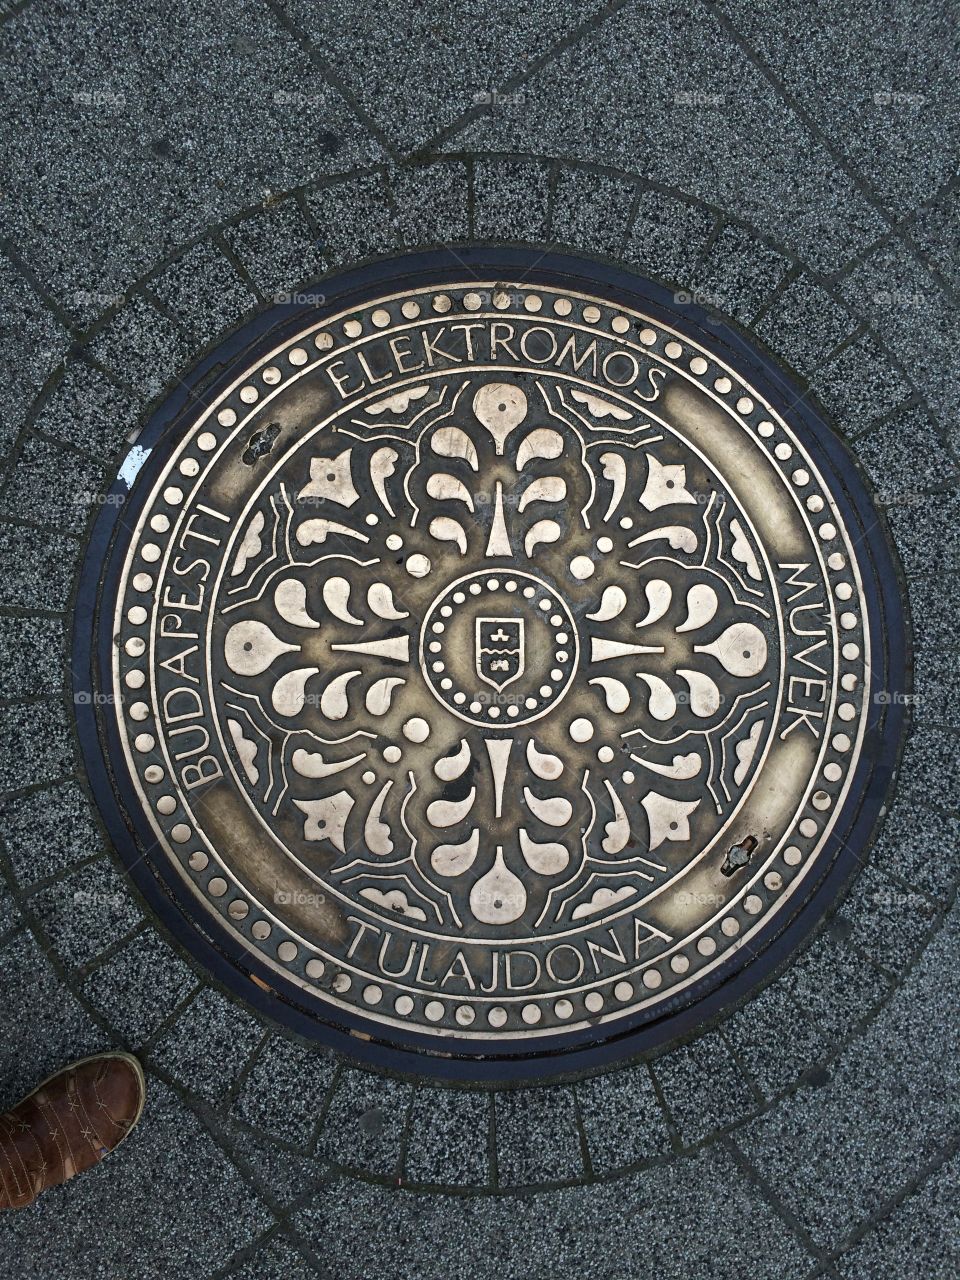 Budapest manhole cover